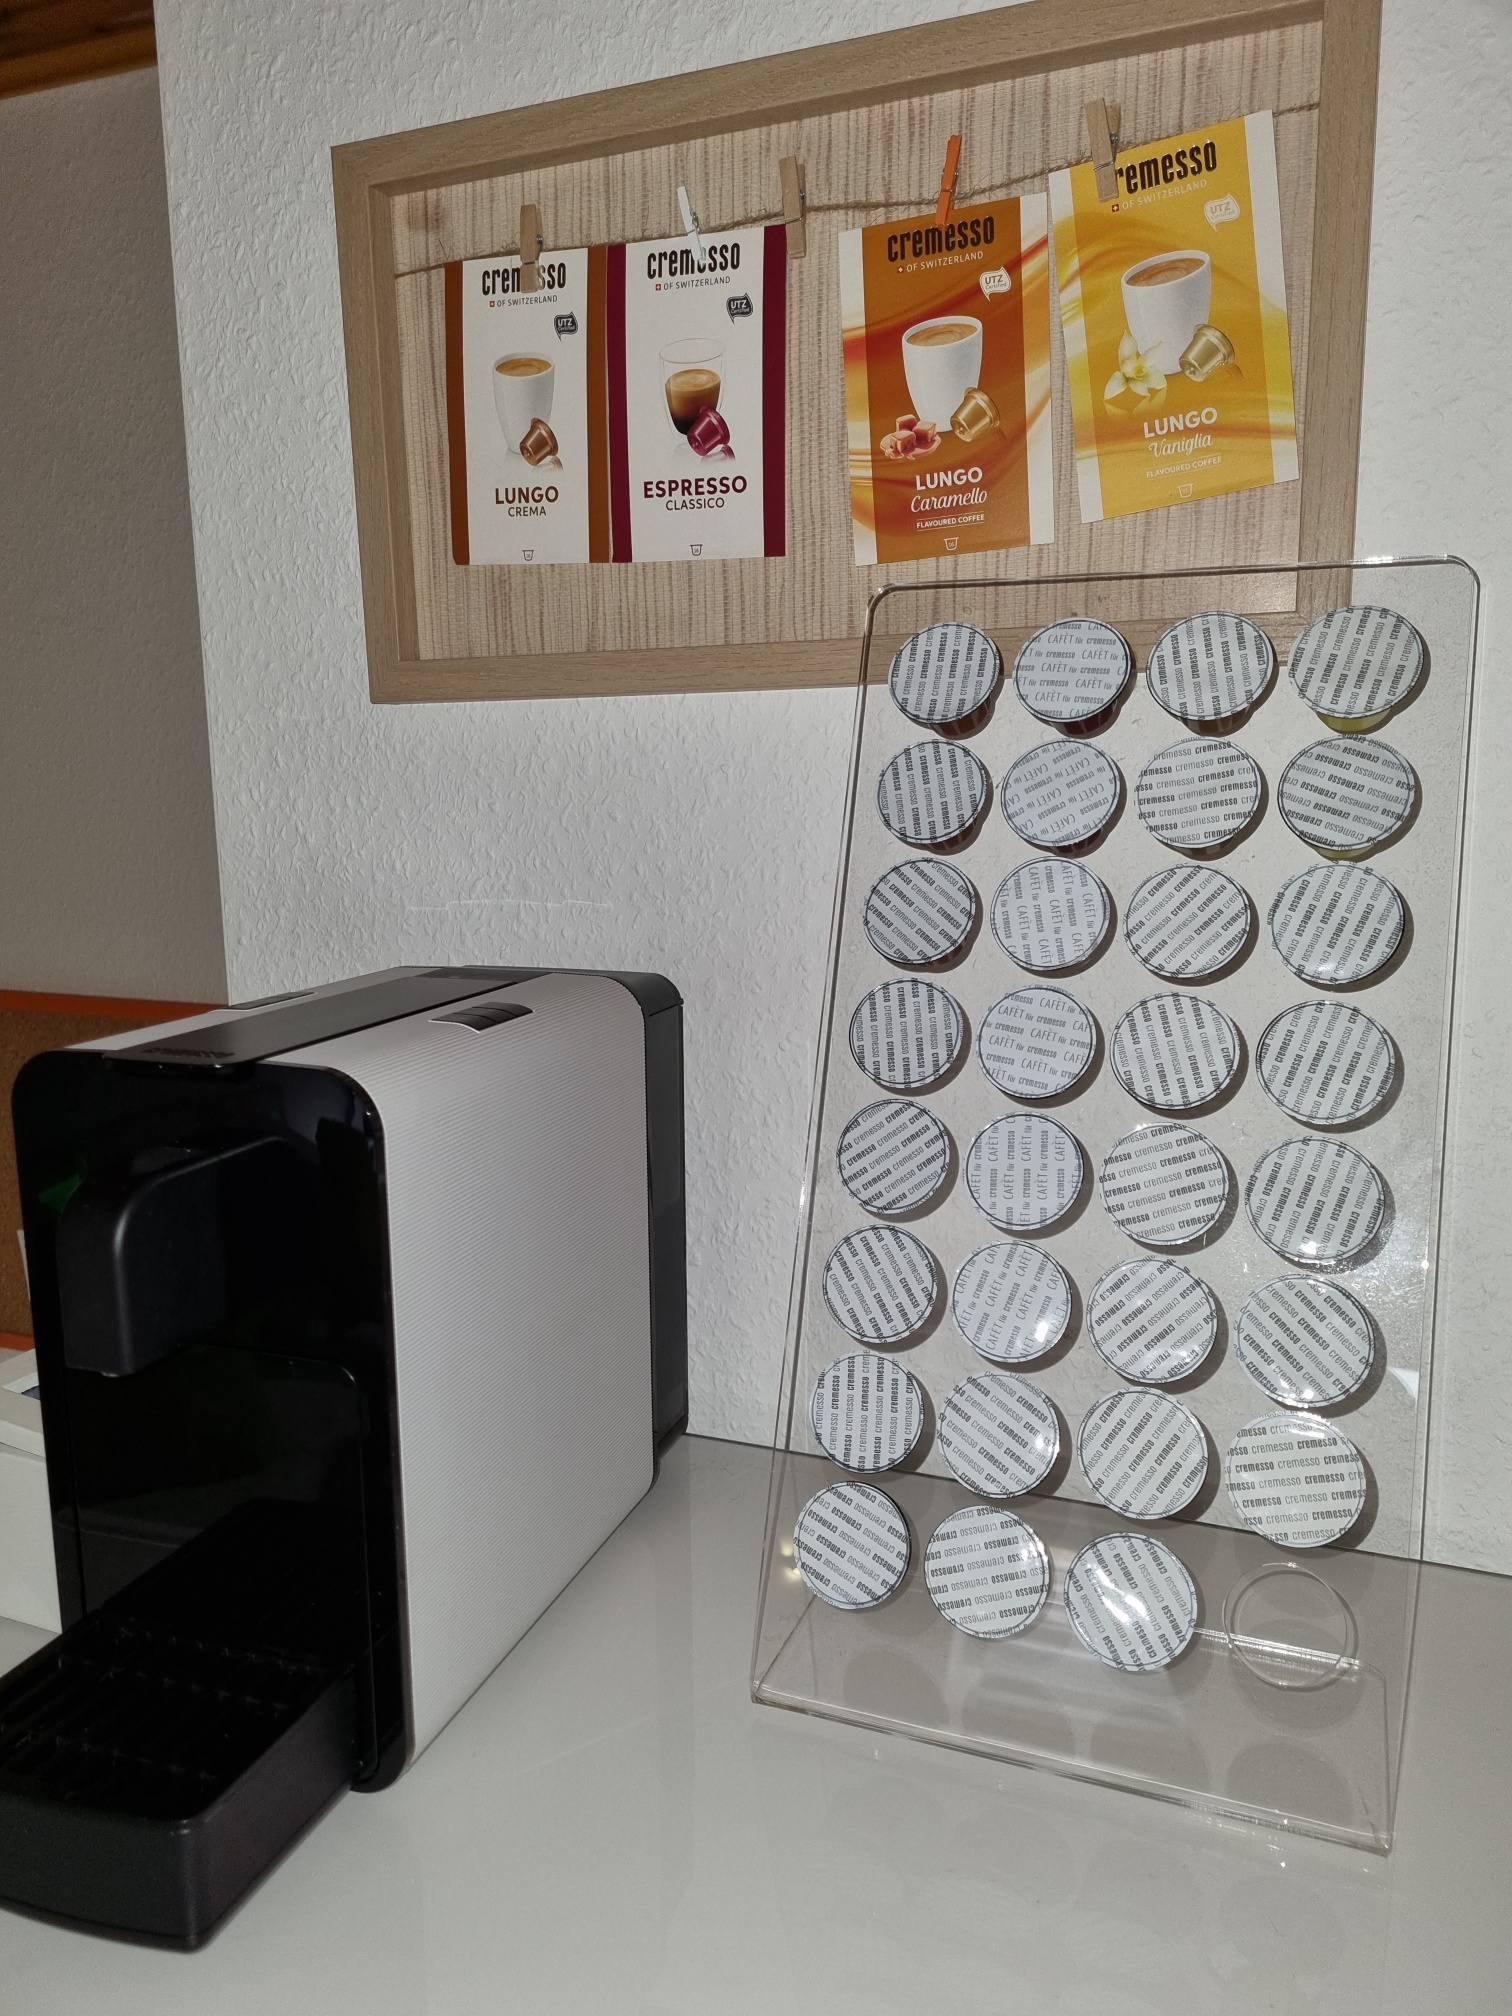 Kaffee-Kapsel-Maschine Cremesso mit Kaffeekapseln